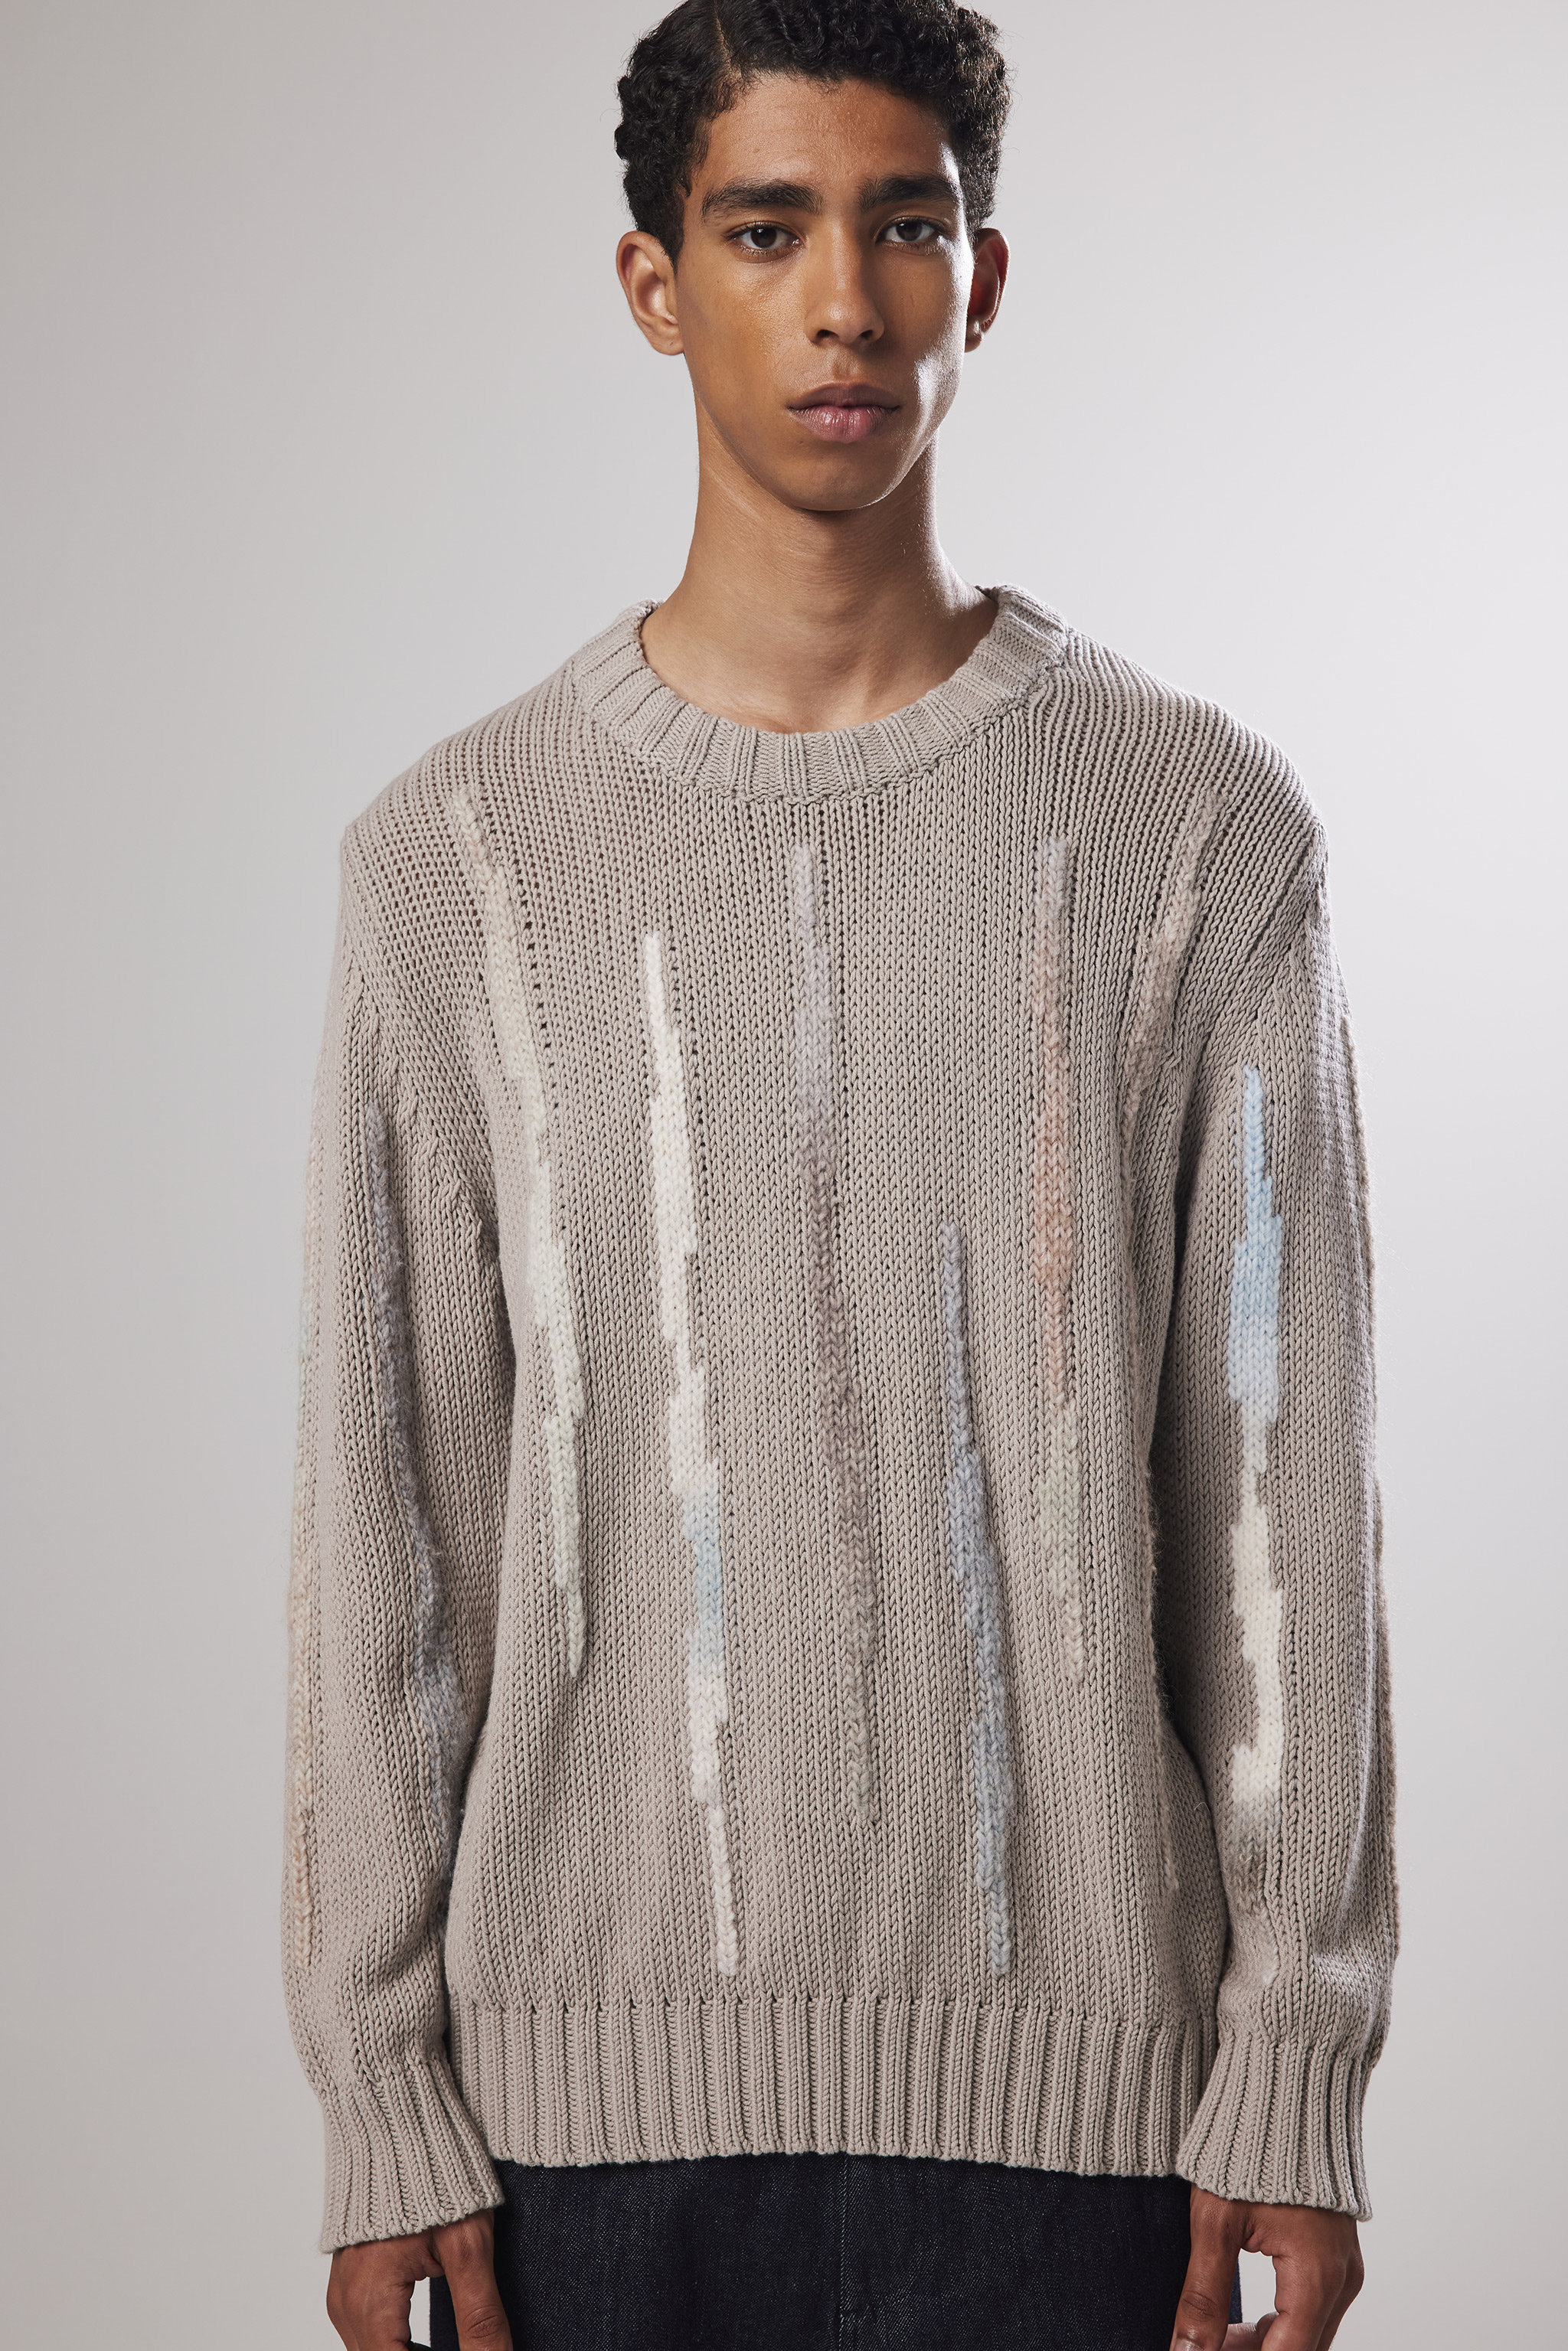 Rick 6448 men's sweater - Brown - Buy online at NN.07®